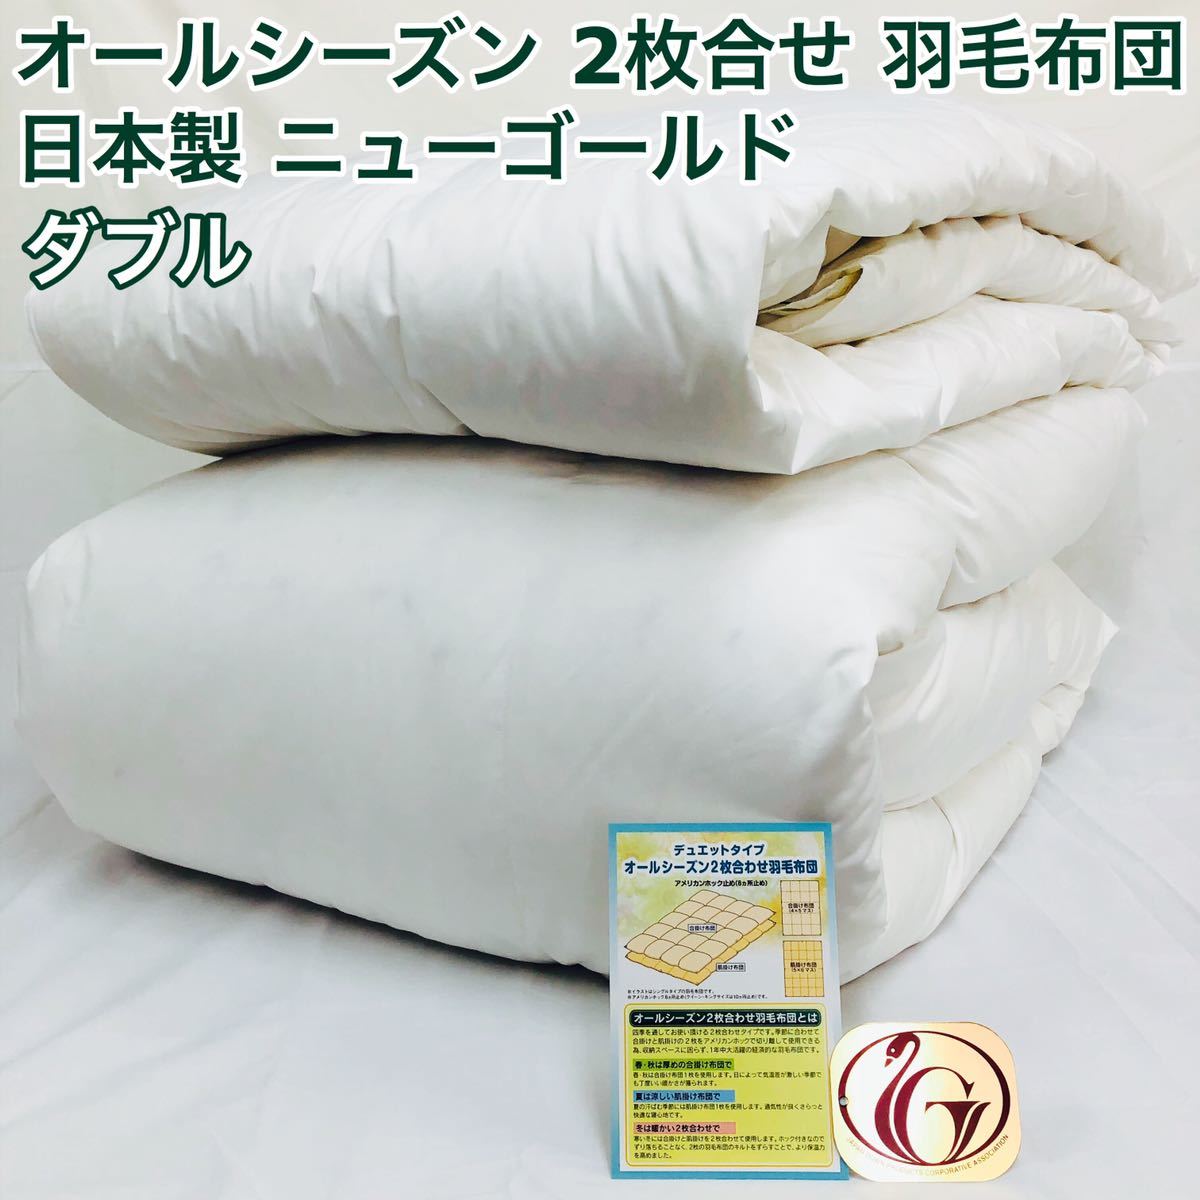 2枚合わせ 羽毛布団 ダブル ニューゴールド 白色 日本製 190×210cmのサムネイル